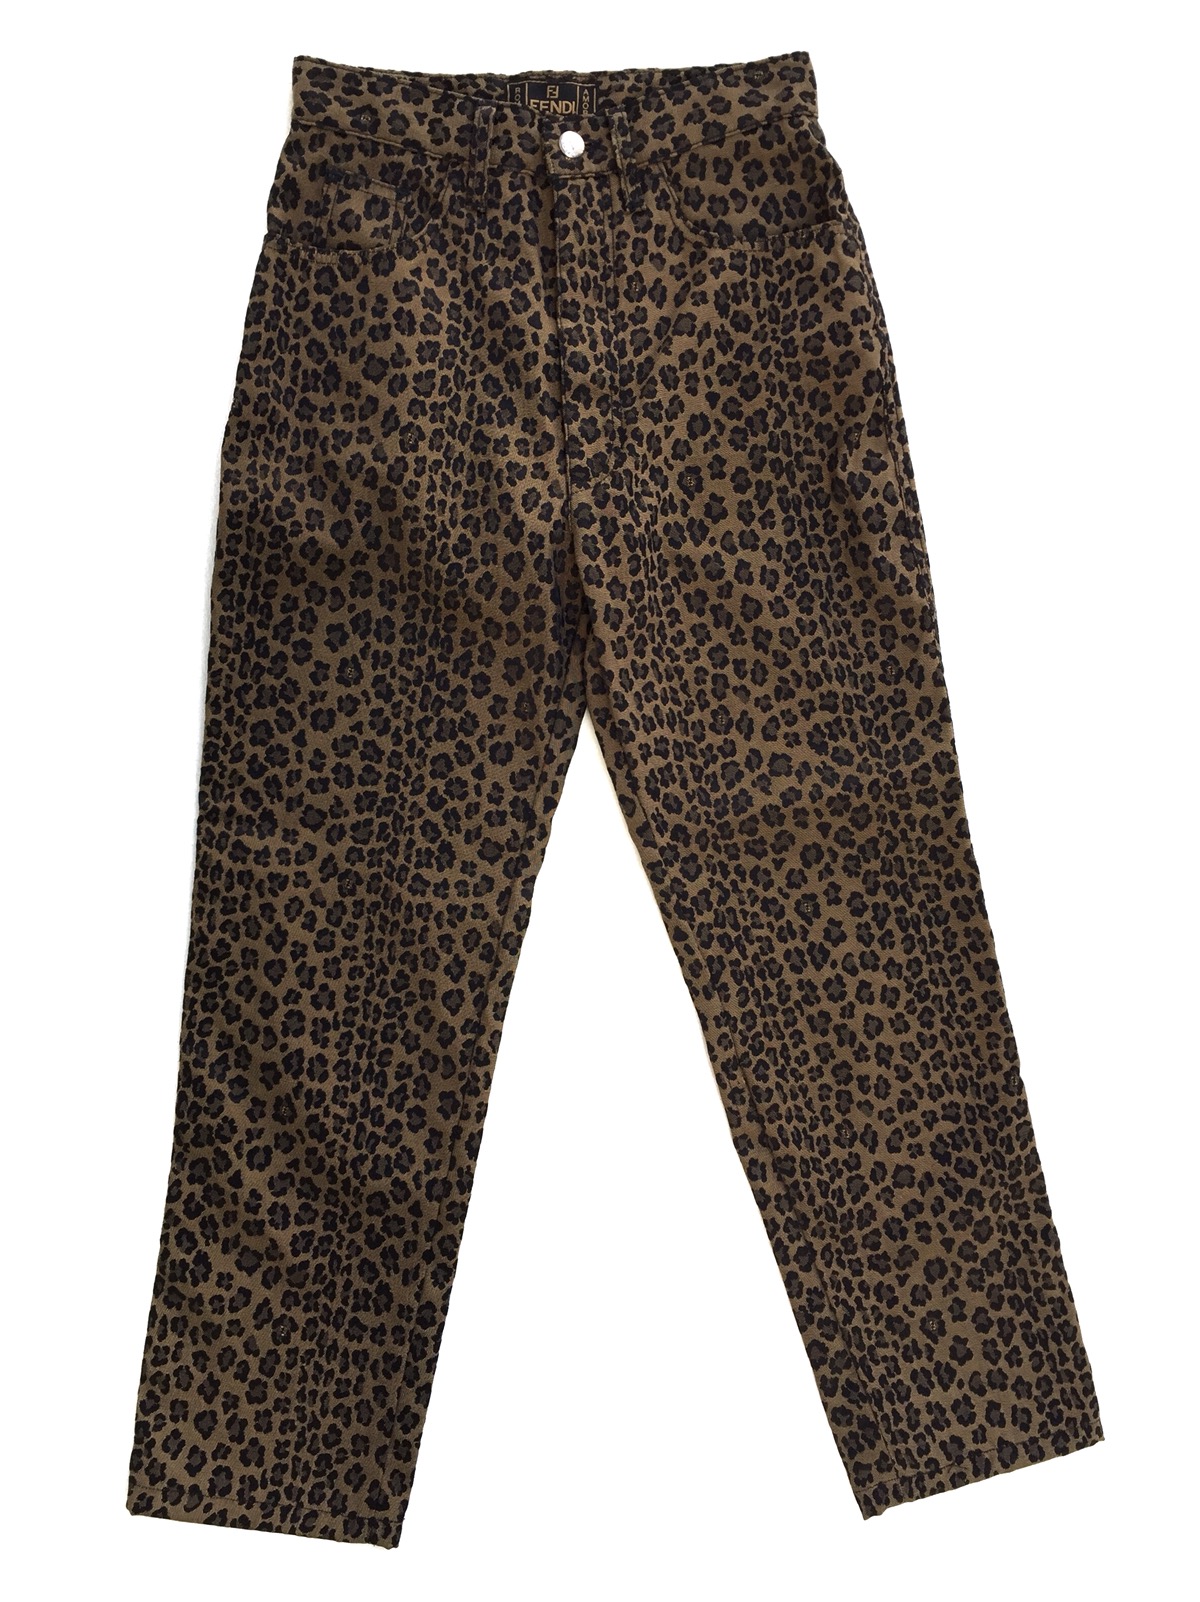 Vintage Authentic Fendi Leopard Pants - 1